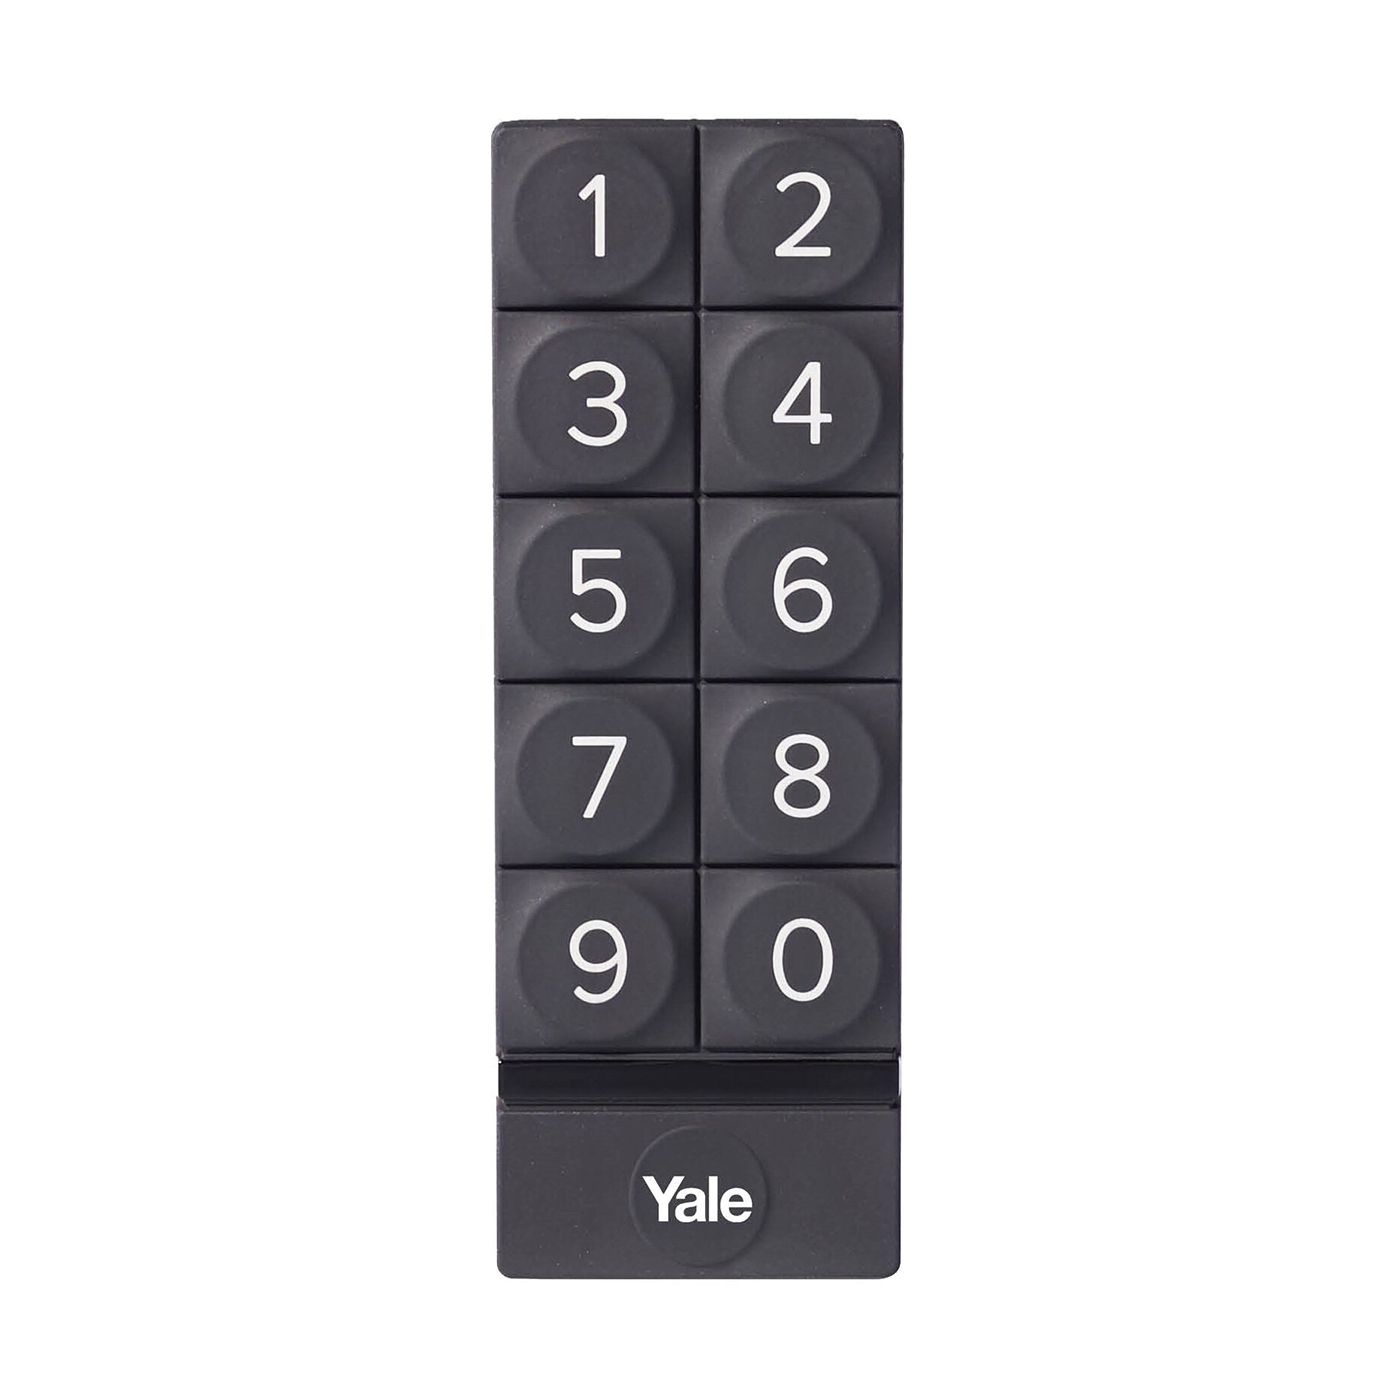 Inteligentny zamek Yale Linus Smart Lock L2 srebrny - zestaw z klawiaturą numeryczną Yale - Smart Keypad oraz regulowaną wkładką Linus® Smart Lock